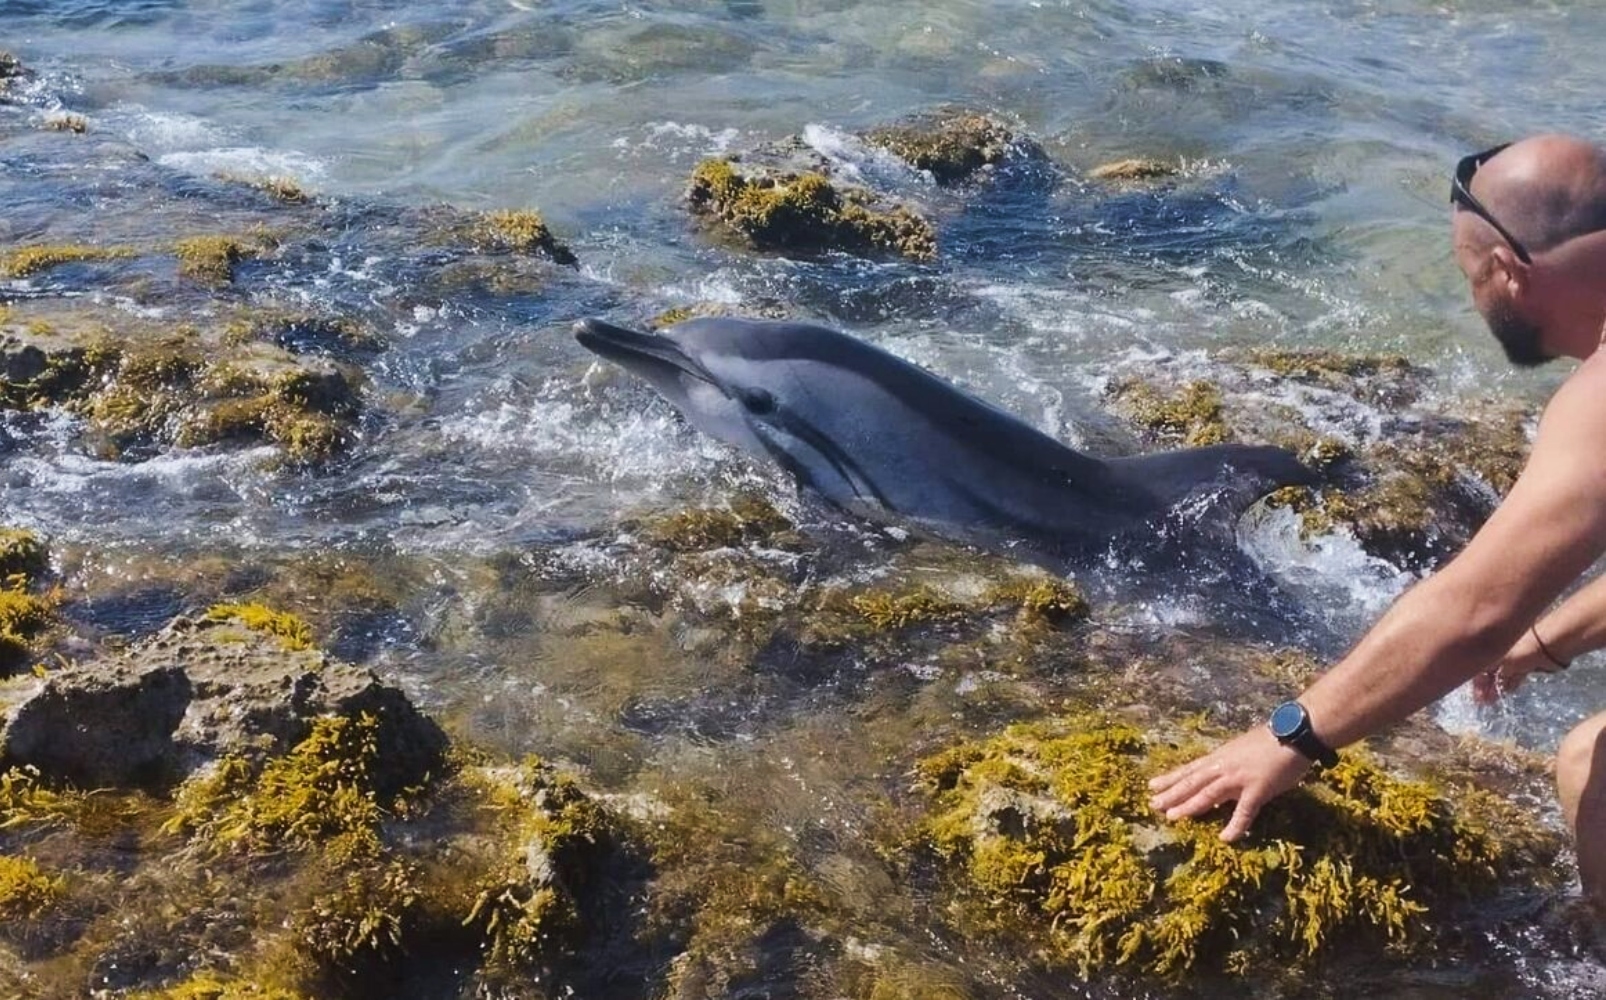 Δελφίνι που έχασε τον προσανατολισμό του, ξεψύχησε παρά τις προσπάθειες λουομένων να το σώσουν